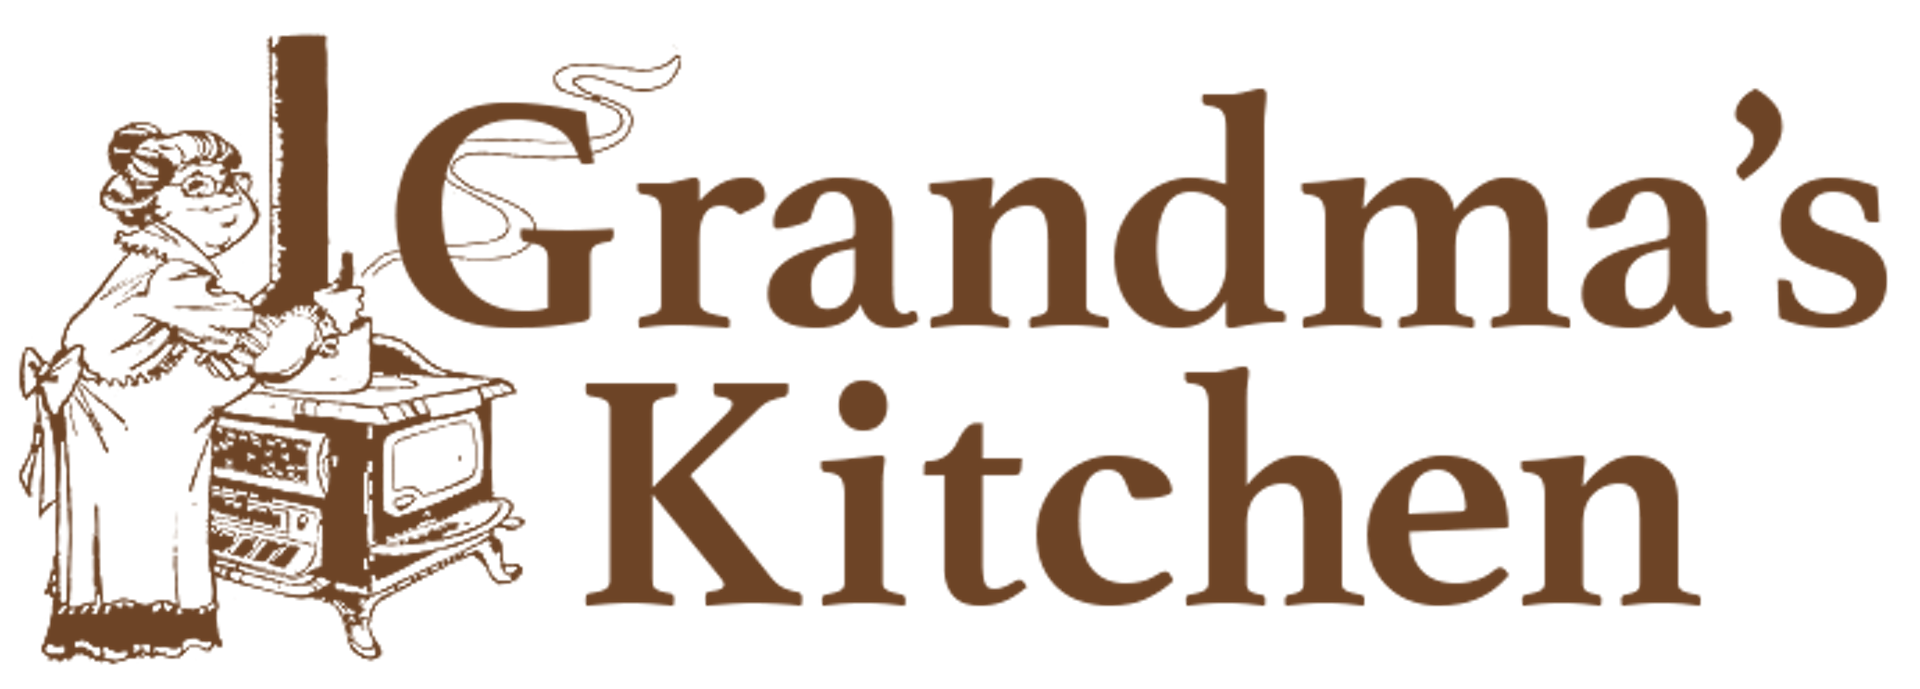 Grandma's Kitchen  Rochester, MN 55906